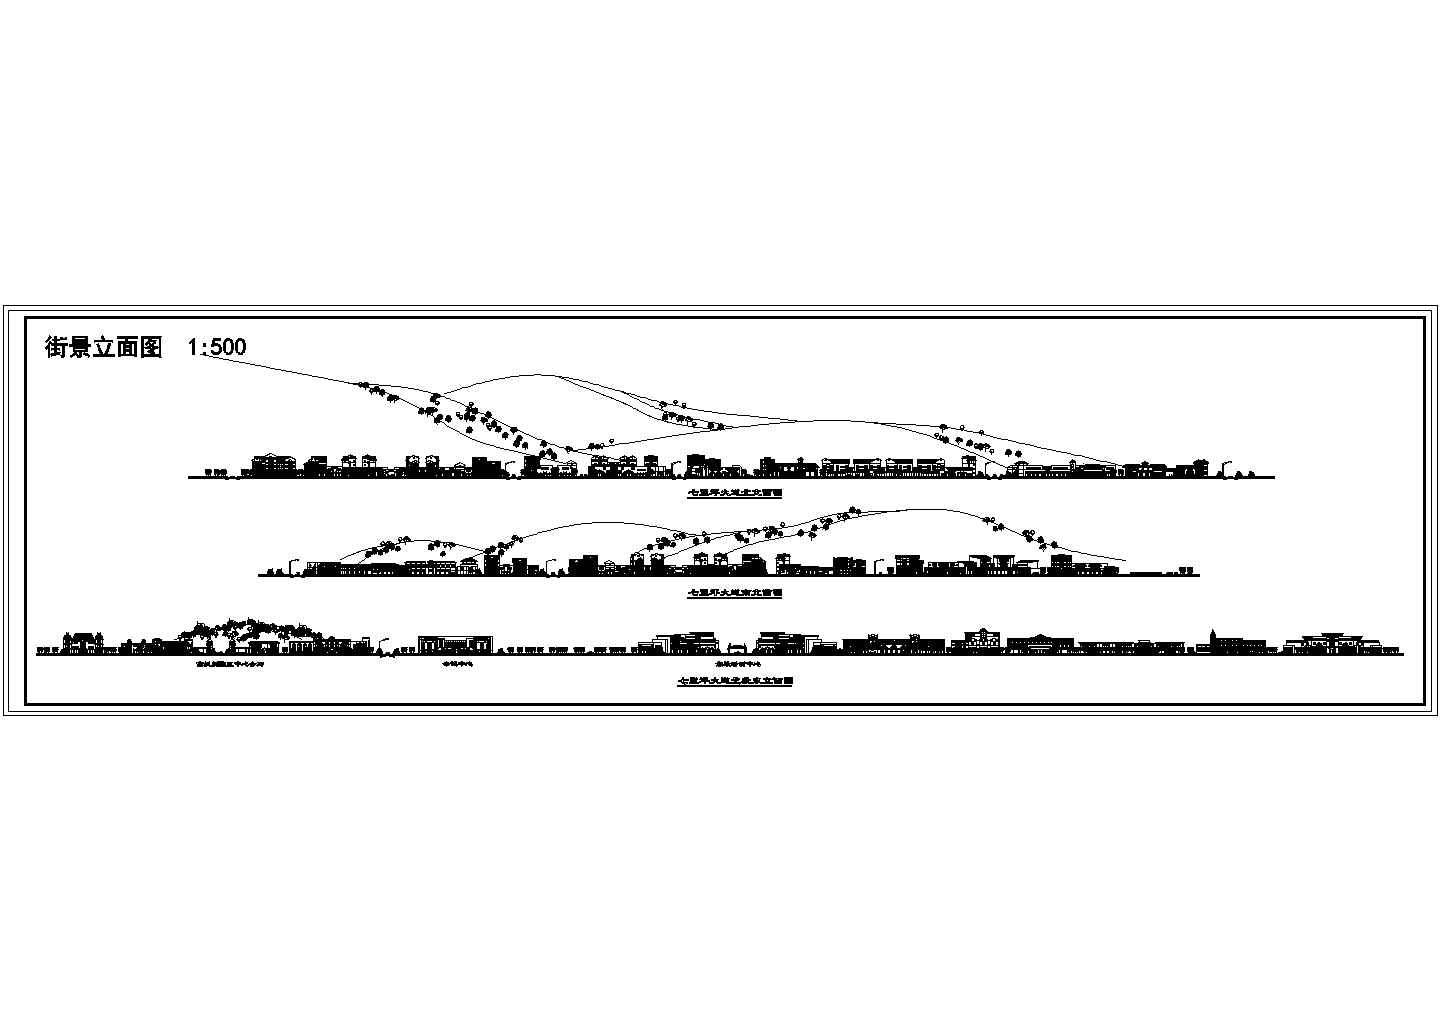 城市道路绿化规划CAD平面方案图-街景立面图